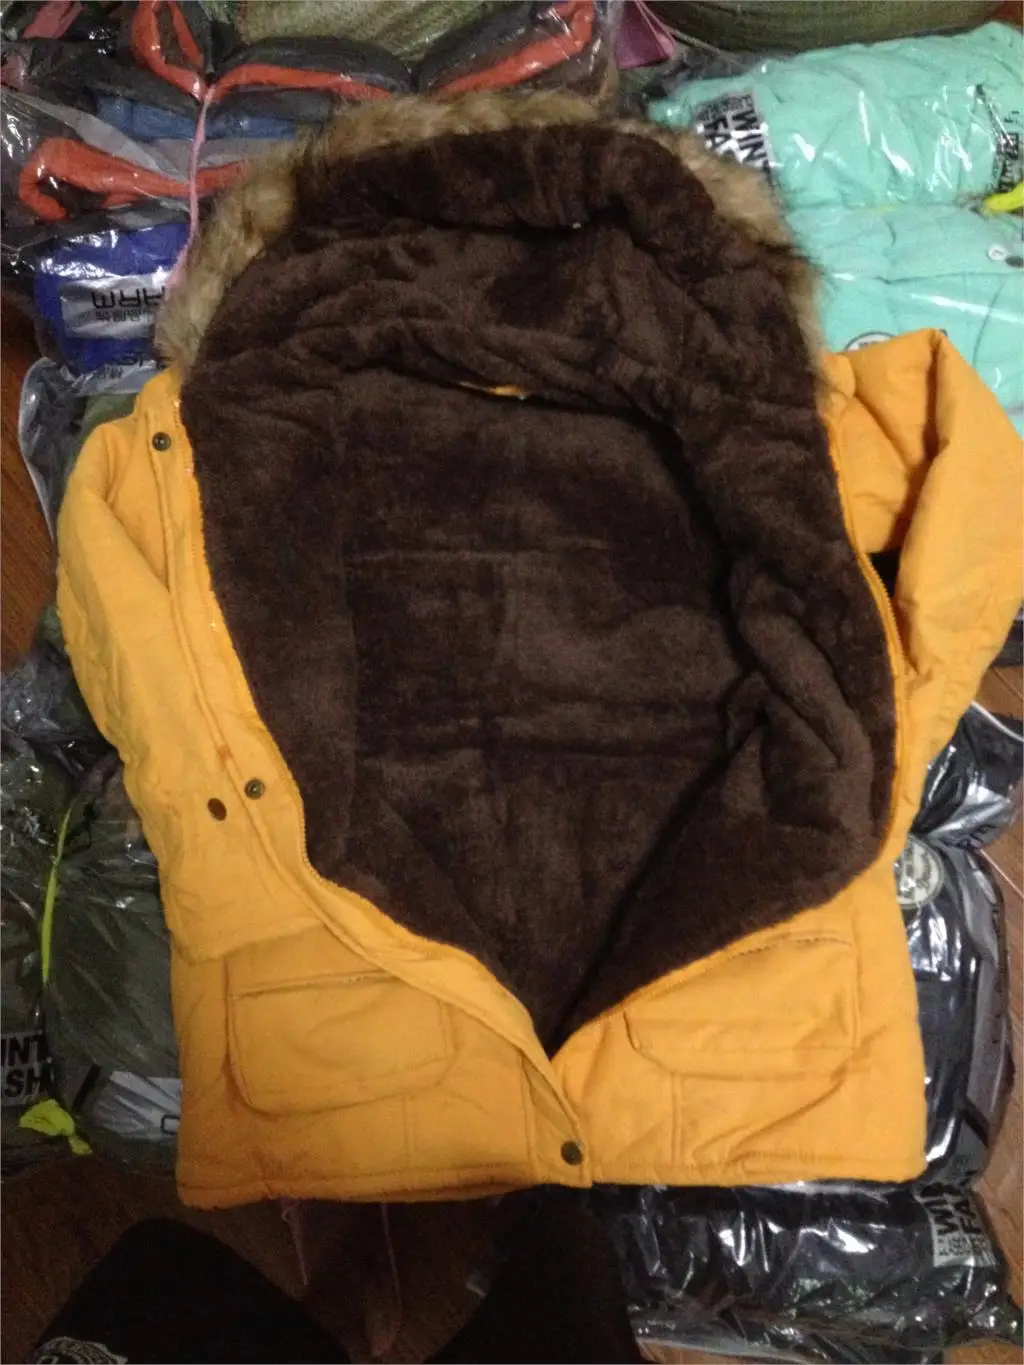 Женская парка, повседневная верхняя одежда, осень-зима, пальто с капюшоном в стиле милитари, зимняя куртка, женские меховые пальто, женская зимняя куртка s и пальто